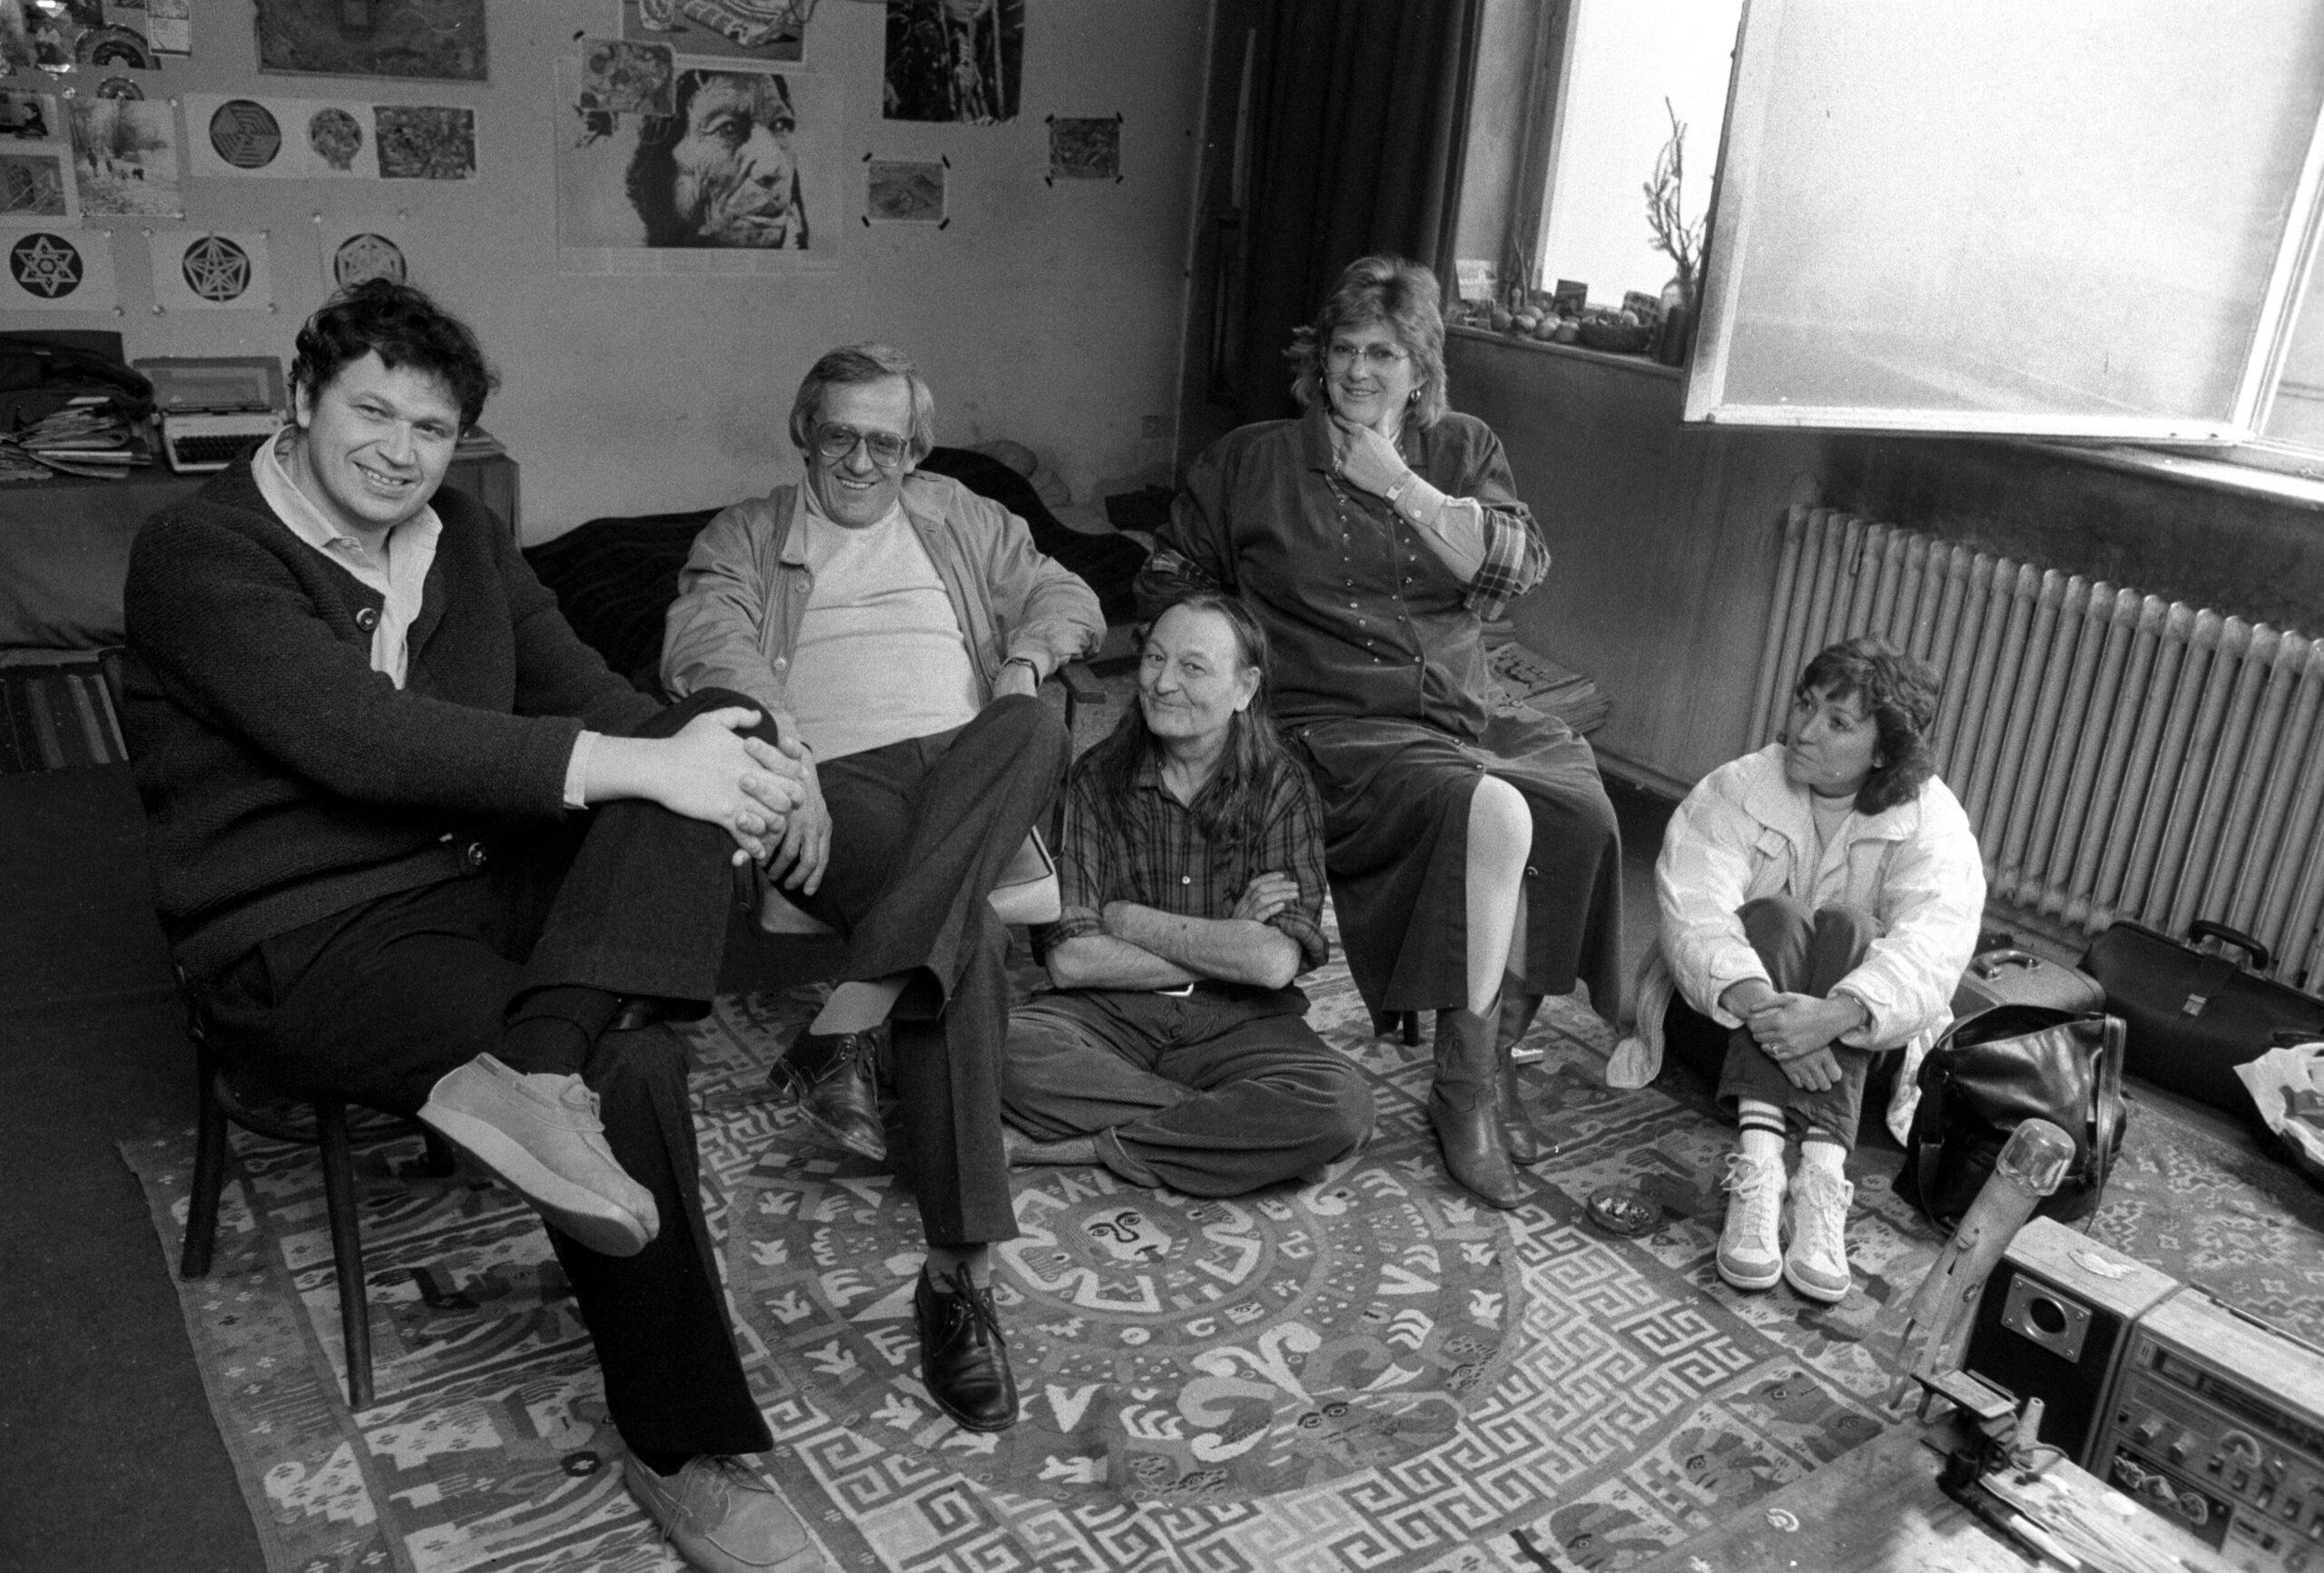 Zu Besuch bei Neuss: die Münchner Kaberettisten Gerhard Polt und Dieter Hildebrandt und zwei unbekannte Frauen, das Foto ist auf das Jahr 1985 datiert. Foto: Imago/Rolf Hayo